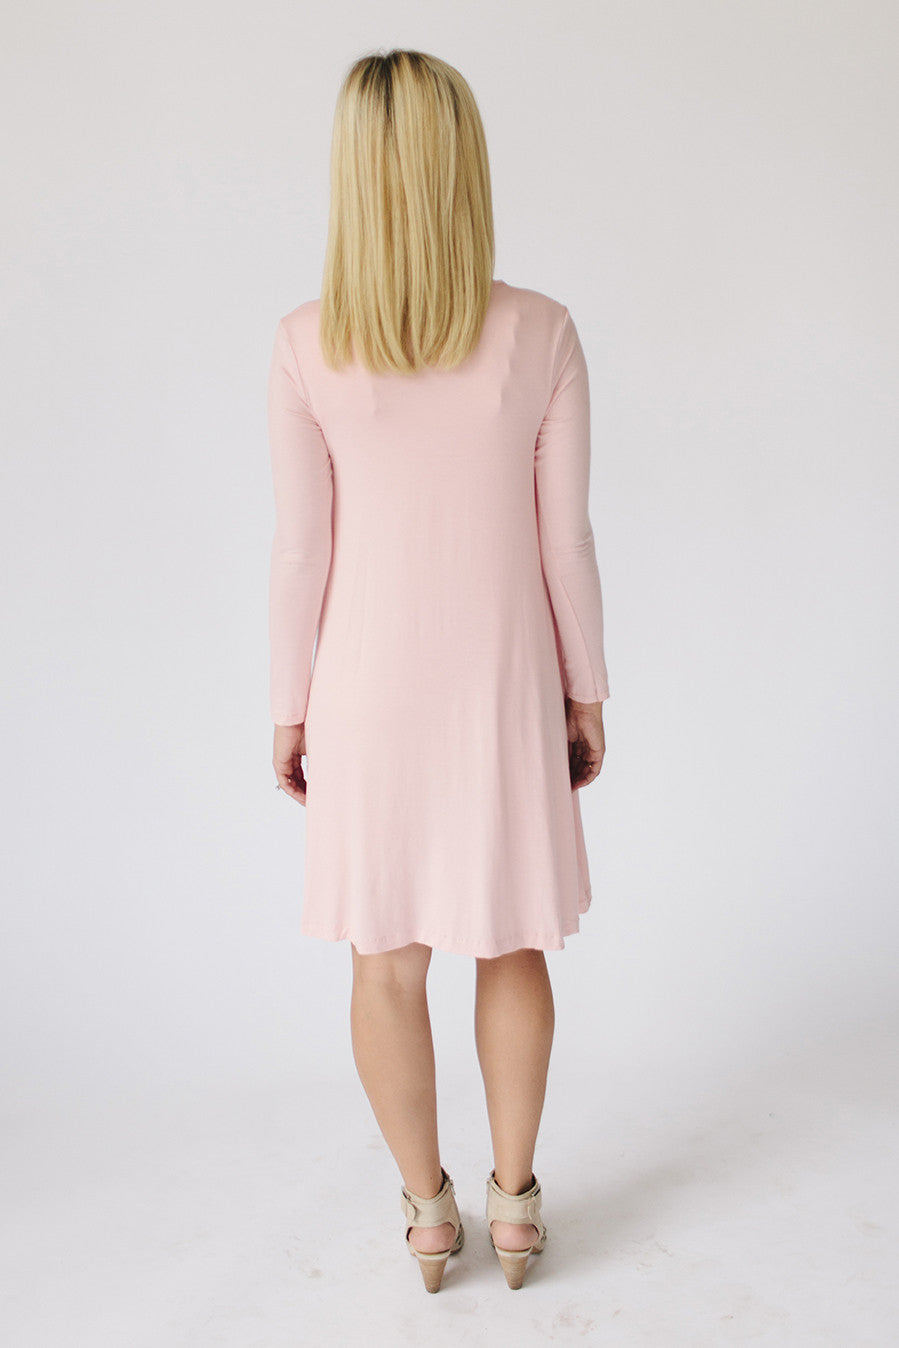 Long Sleeve Swing Nursing Dress - Dusty Pink